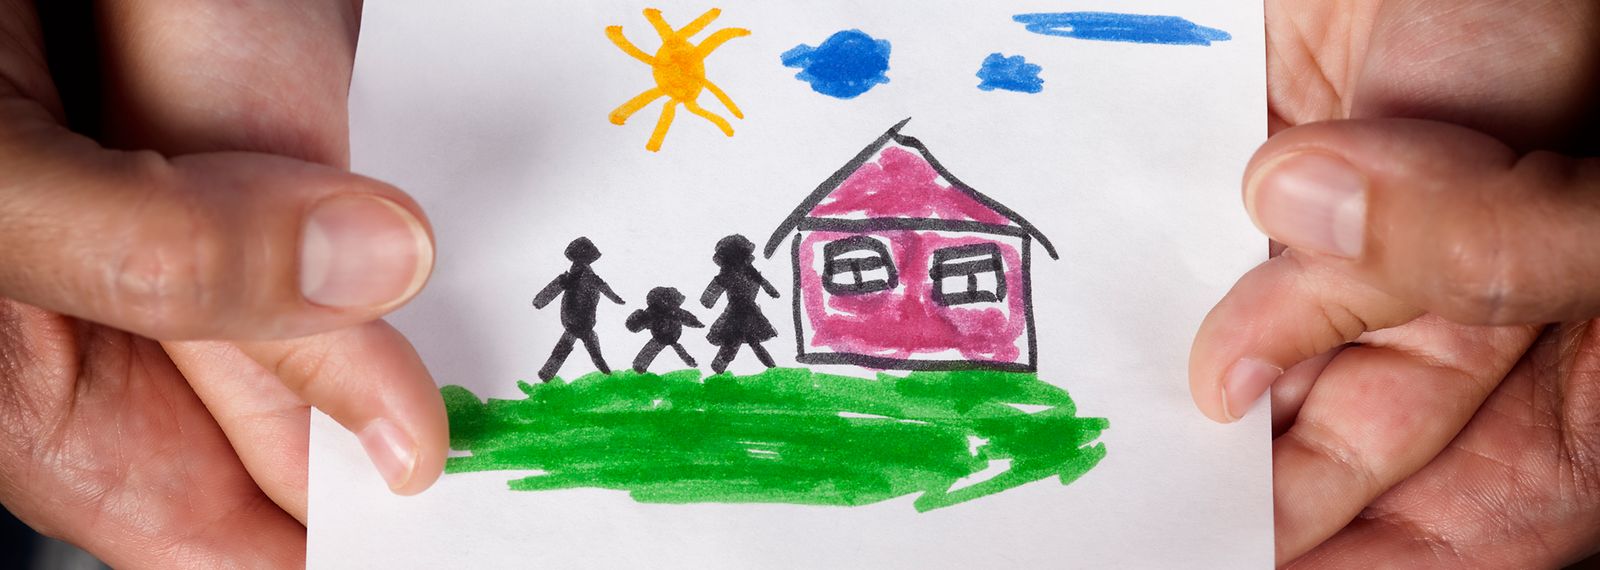 Hände halten ein Papier auf dem eine Kinderzeichnung mit einem Haus und drei Personen zu sehen ist